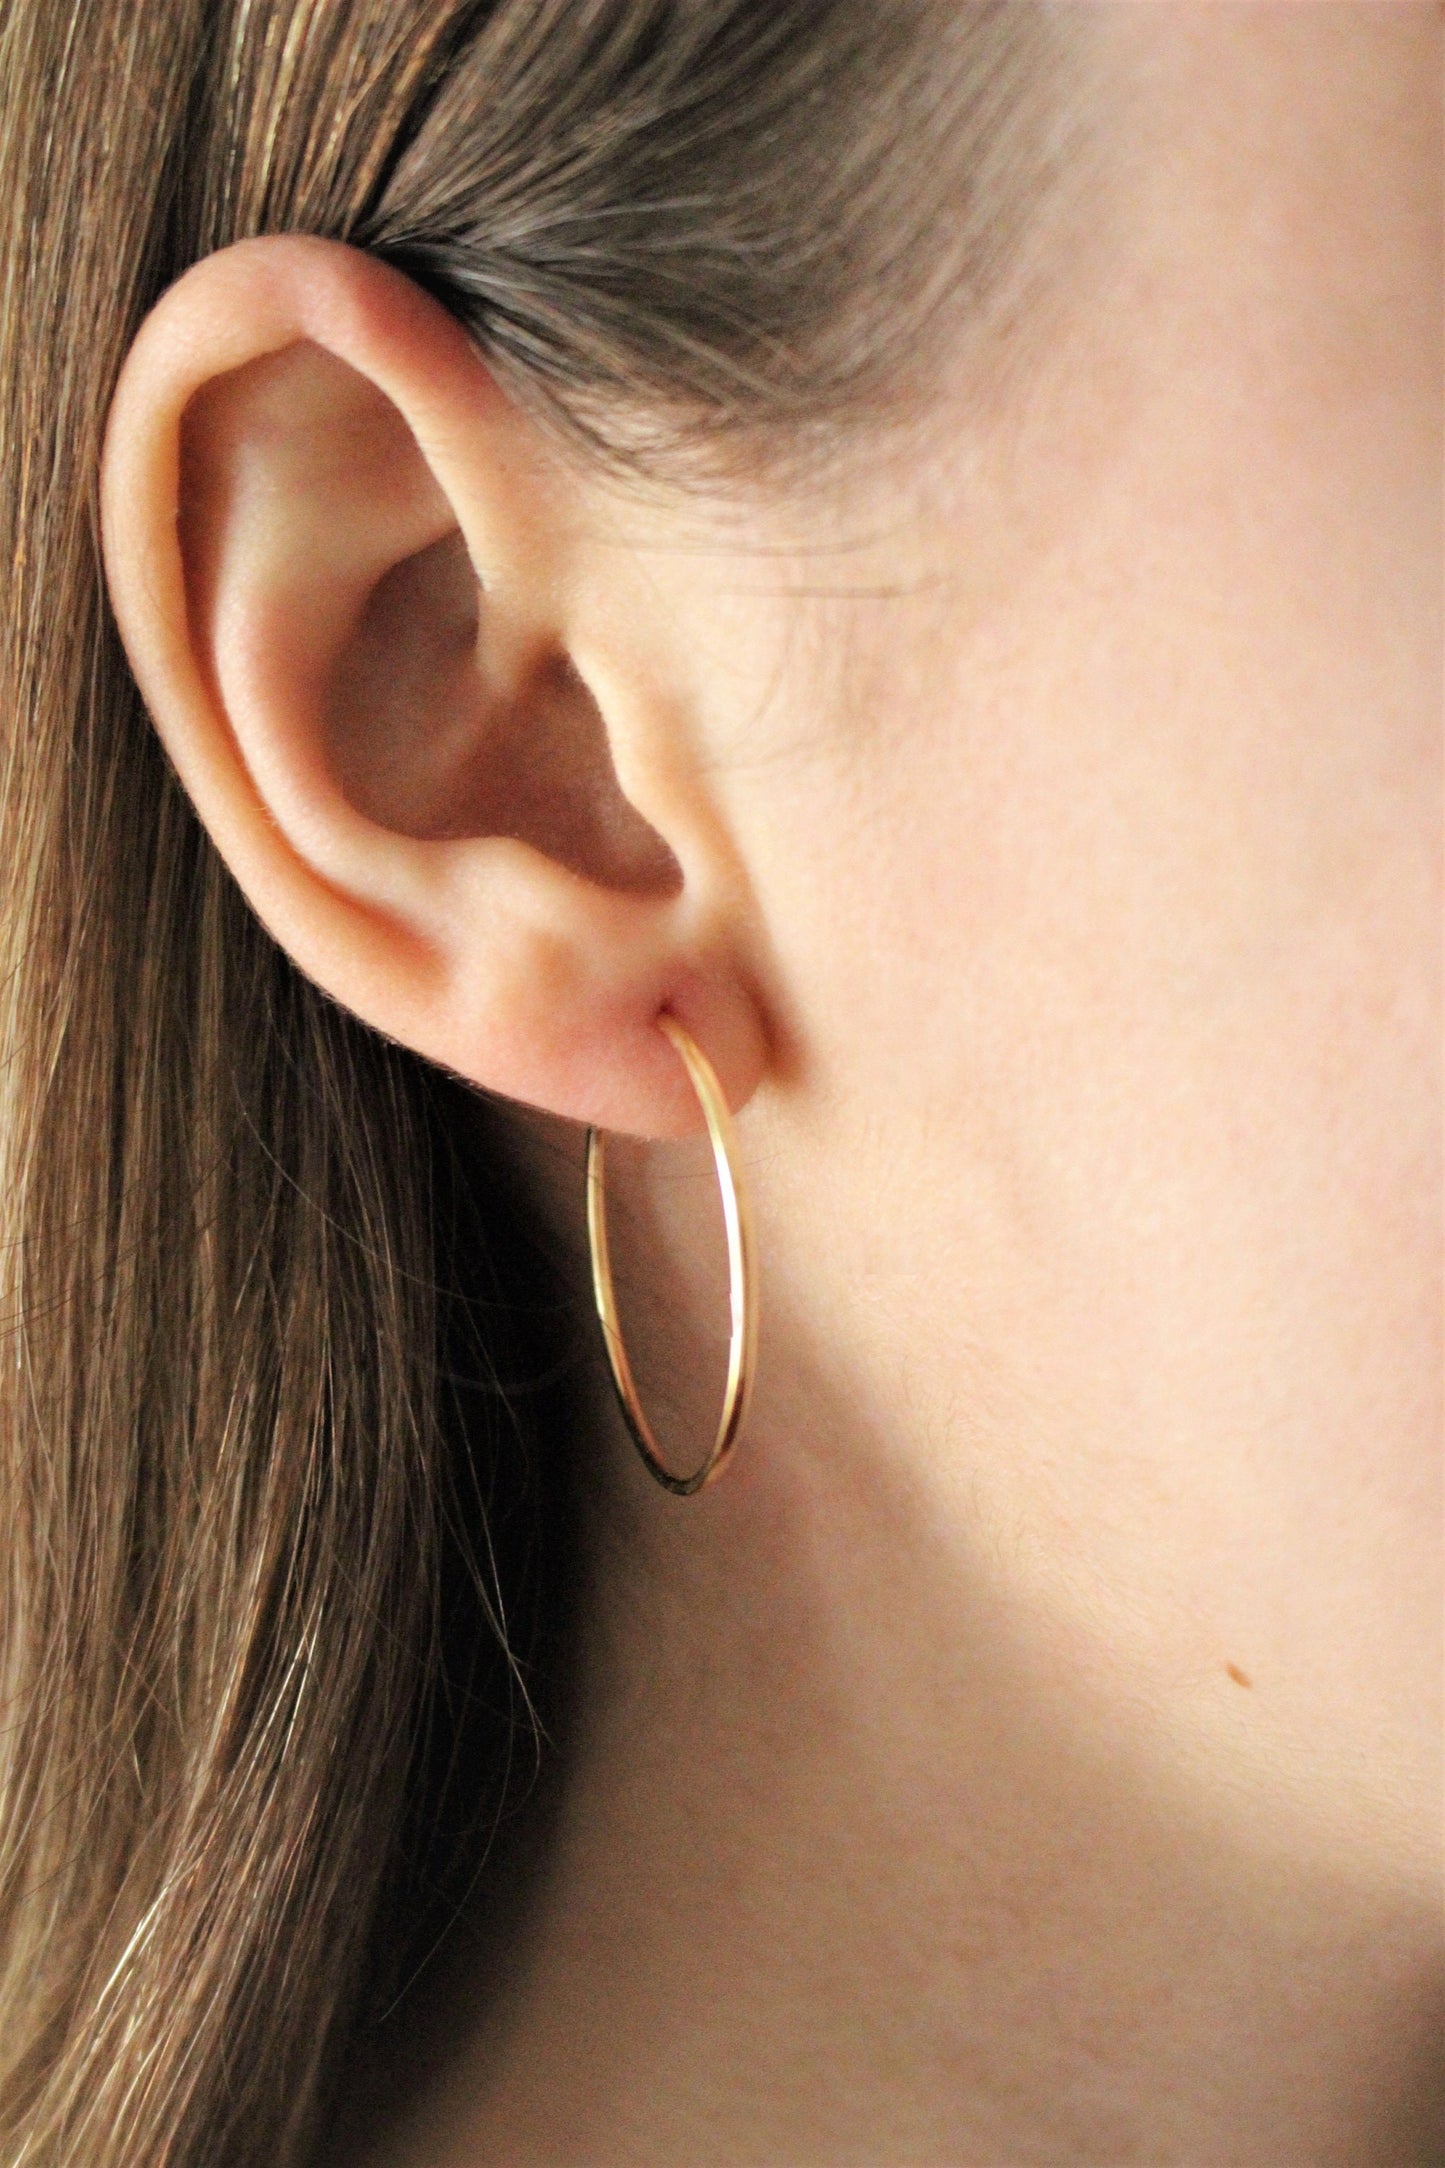 14kt gold filled hoops earrings ∙ Minimalist Creole earrings ∙ 1 pair ∙ Long lasting earrings tiny simple